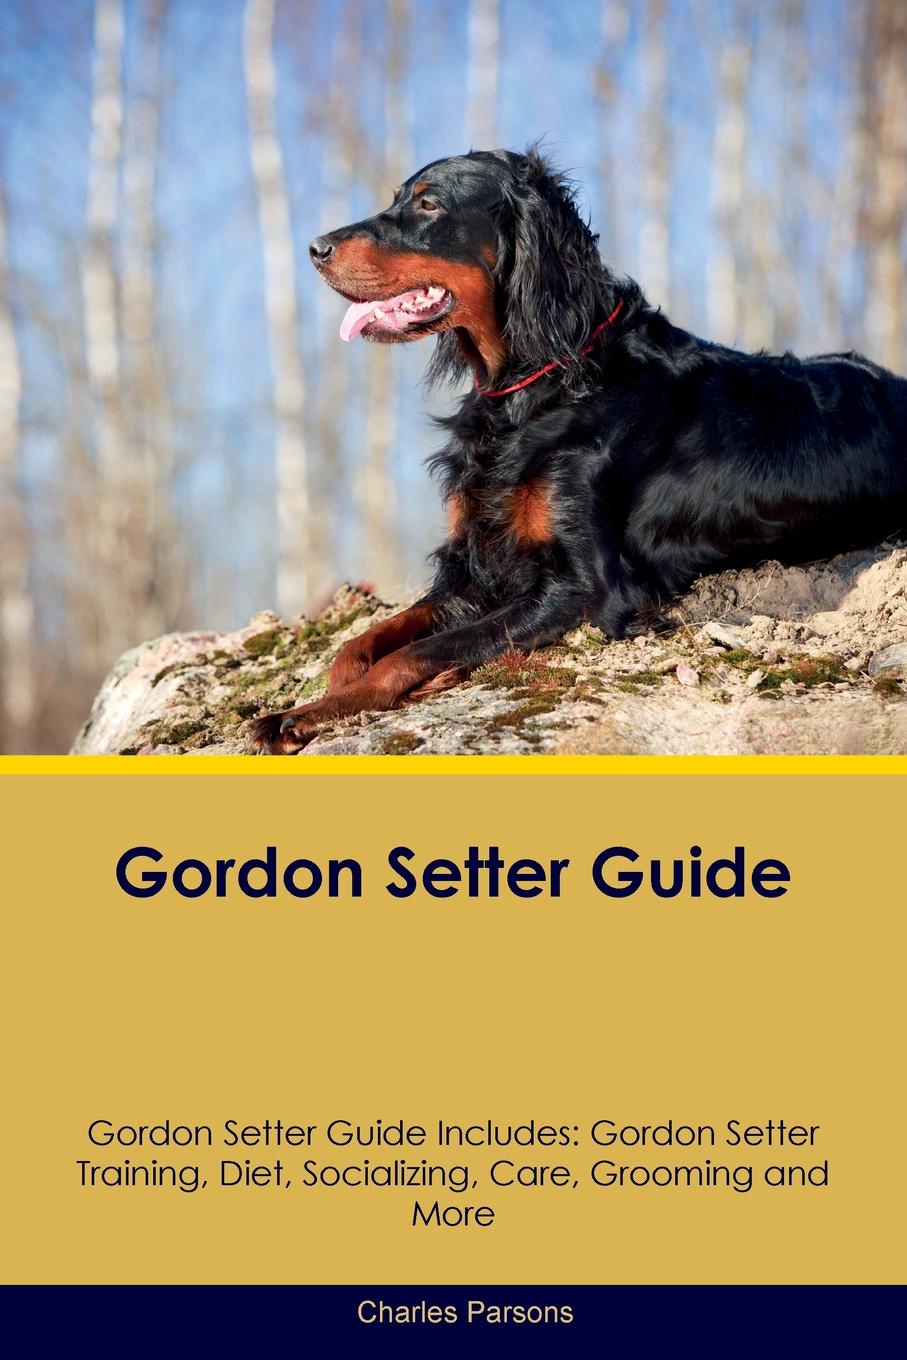 Gordon Setter Guide Gordon Setter Guide Includes. Gordon Setter Training, Diet, Socializing, Care, Grooming, Breeding and More